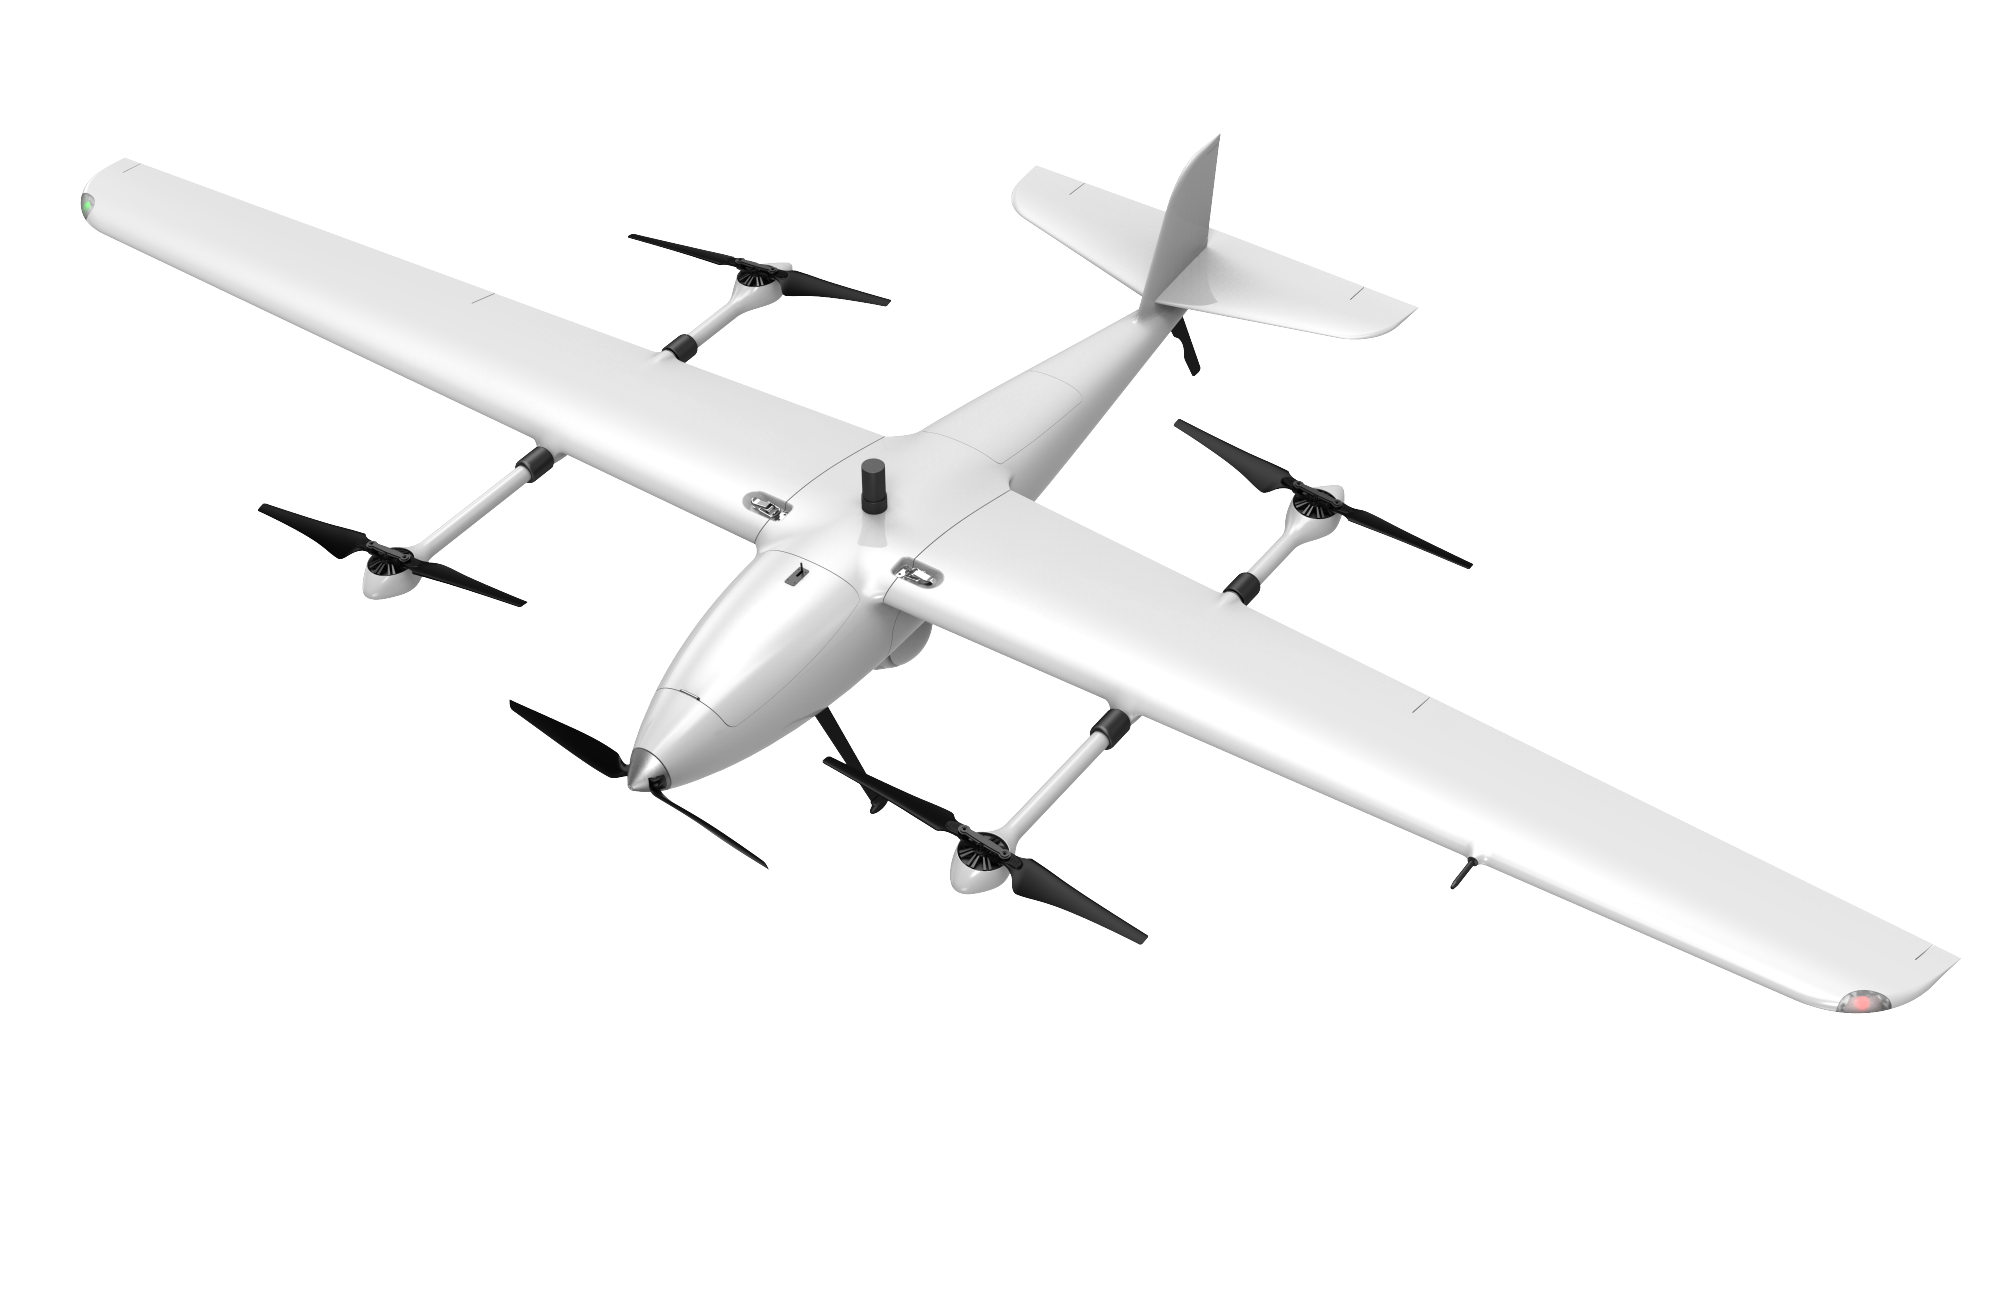 Eve为其电动垂直起降飞机指定三家供应商 - 民用航空网